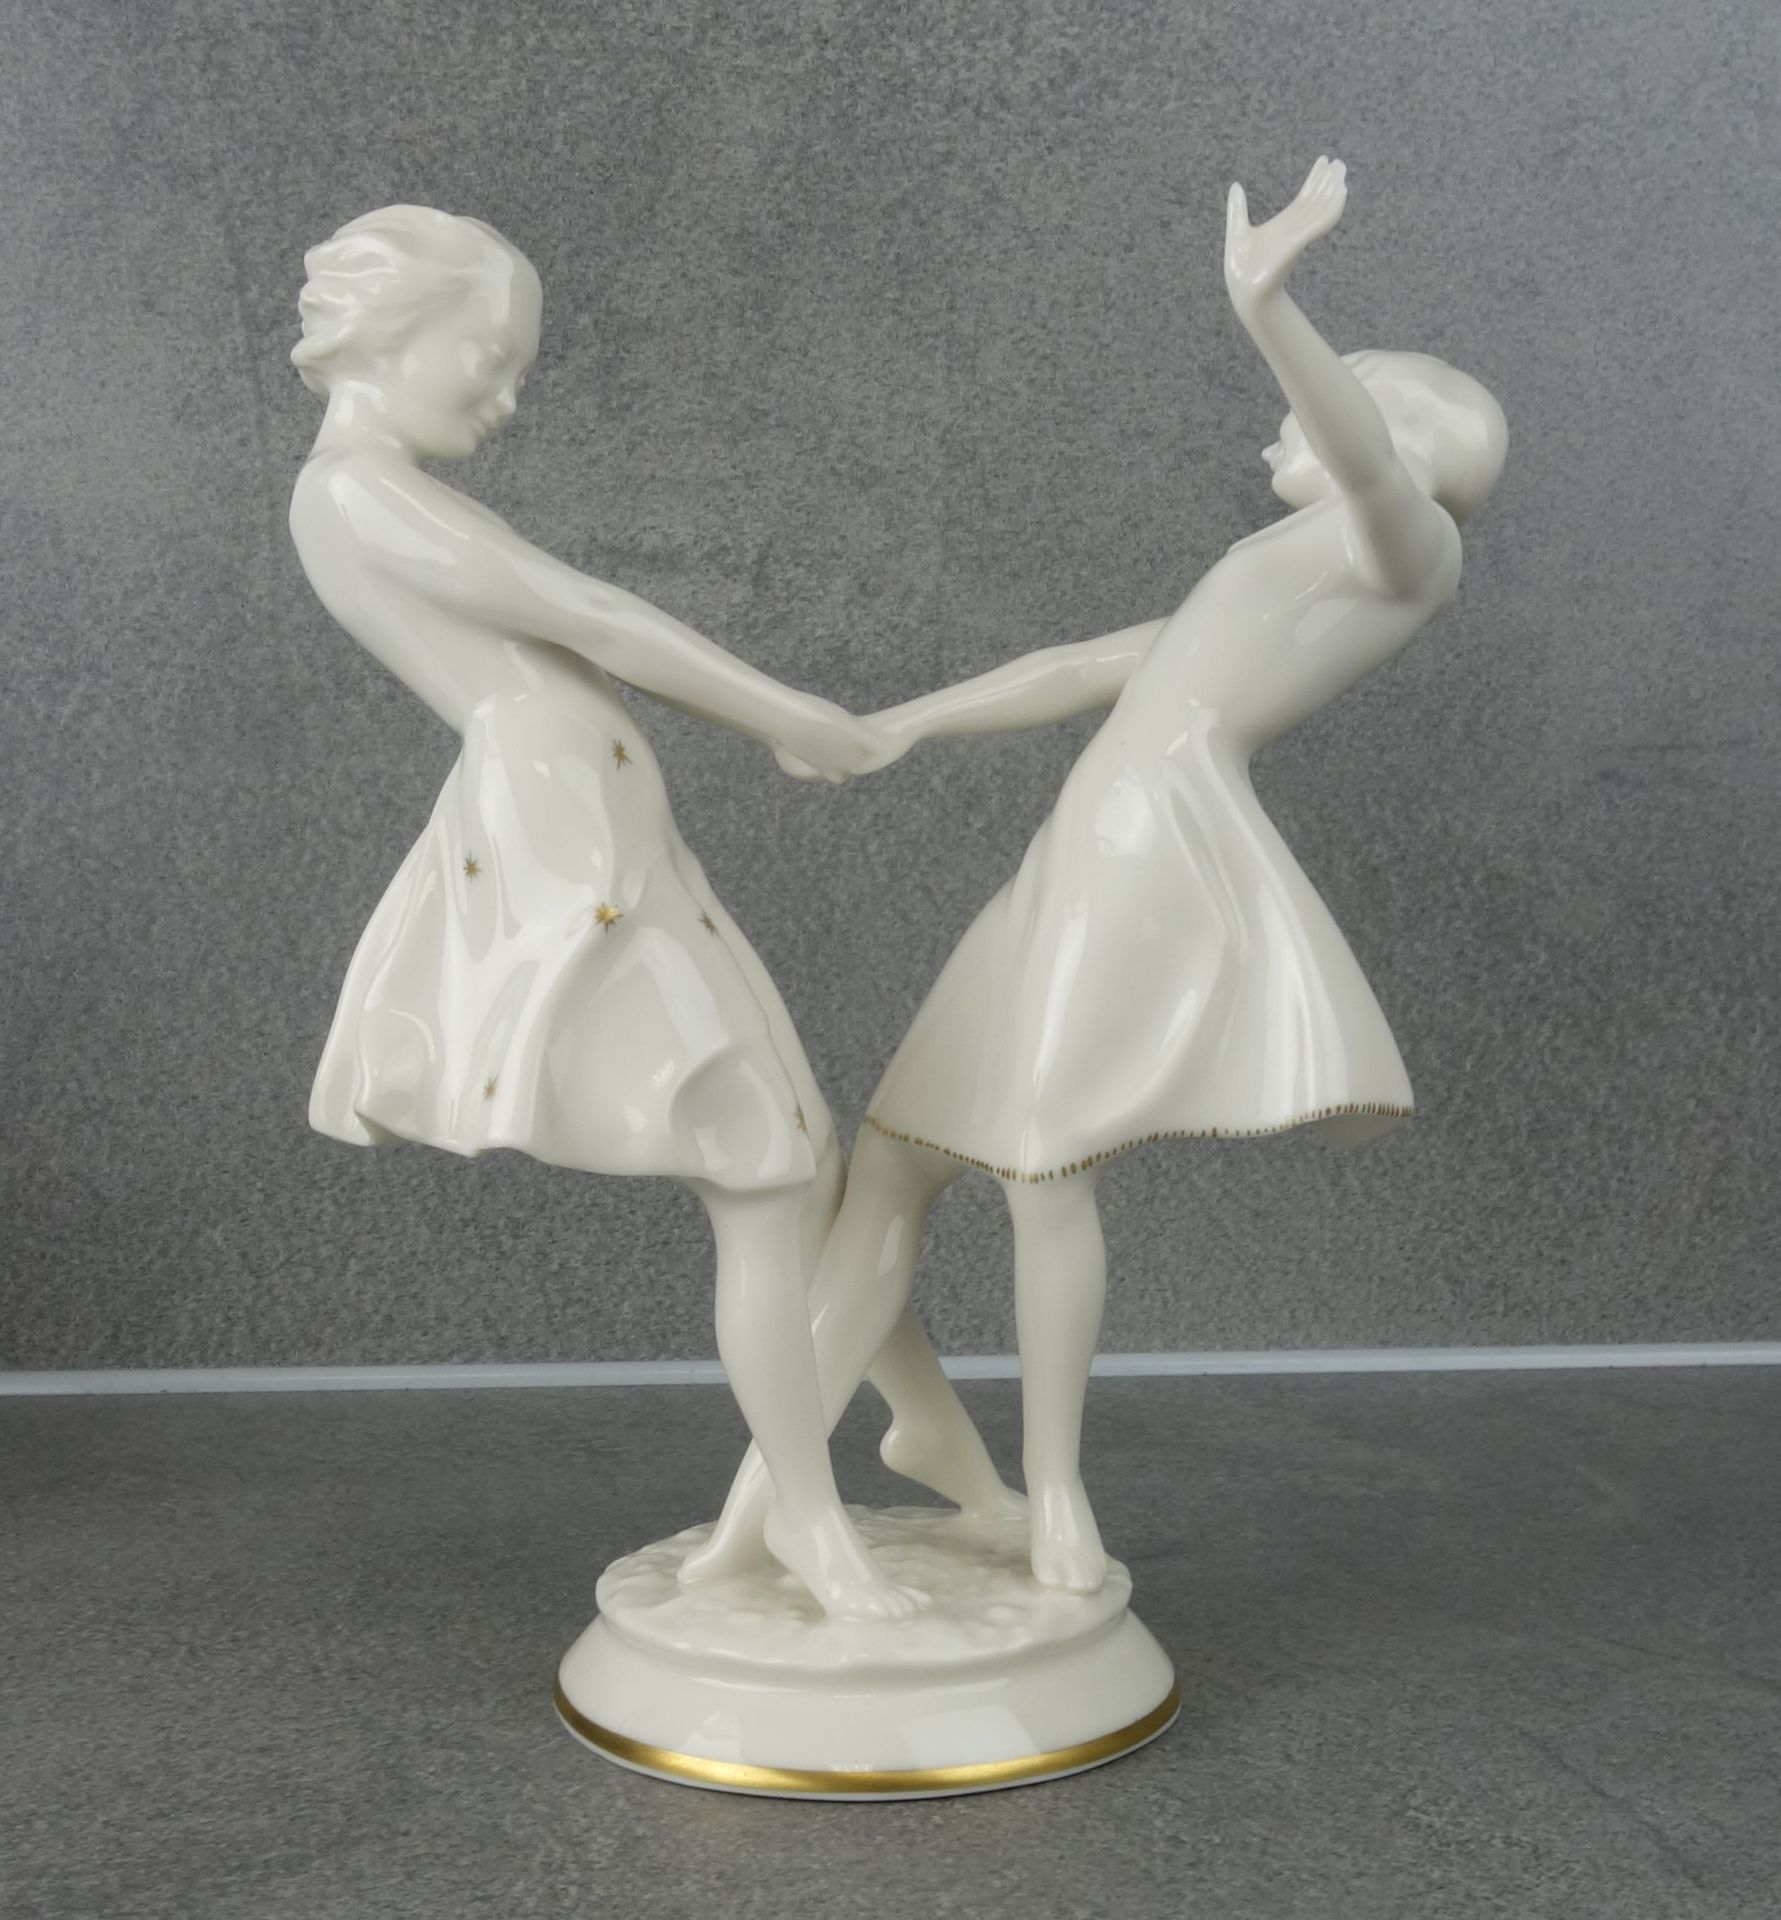 CARL WERNER PORCELAIN FIGURES: "DANCING GIRLS" - Image 3 of 5